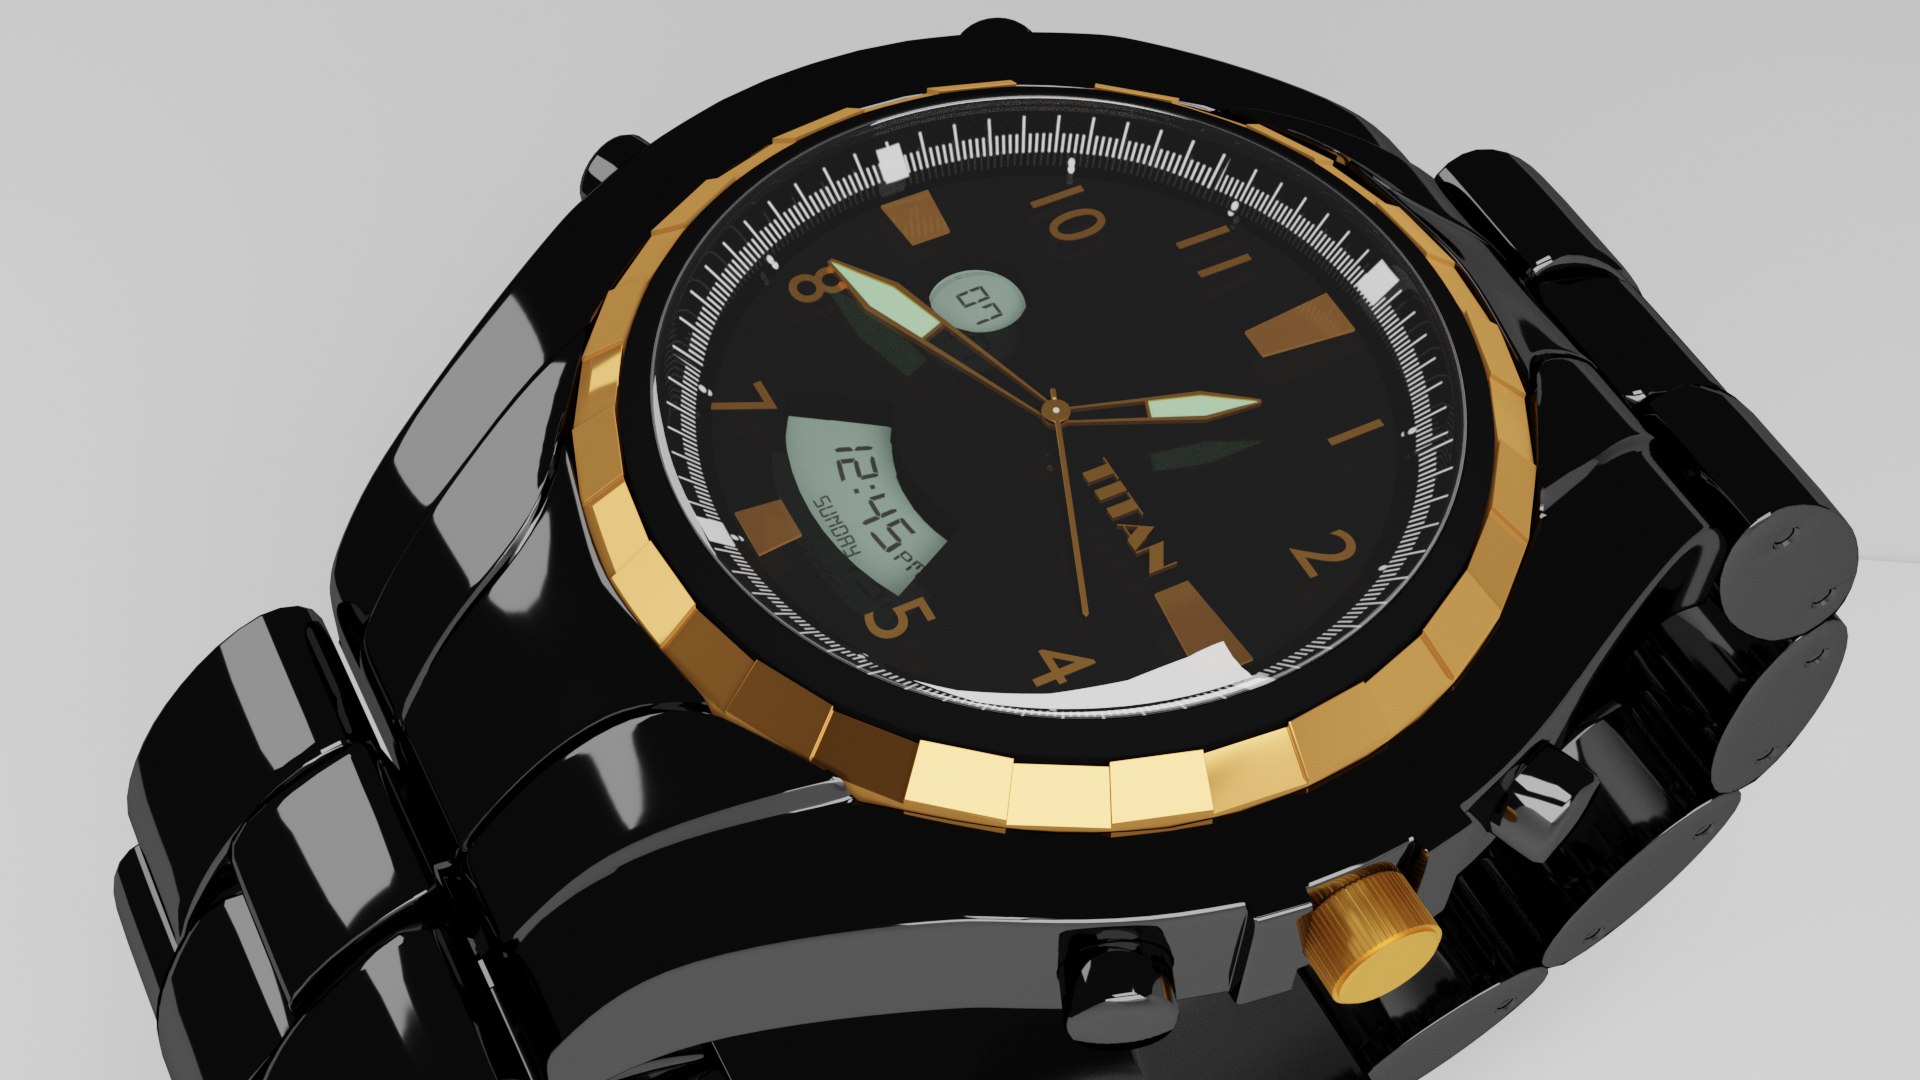 wrist-watch-3d-model-turbosquid-1463075